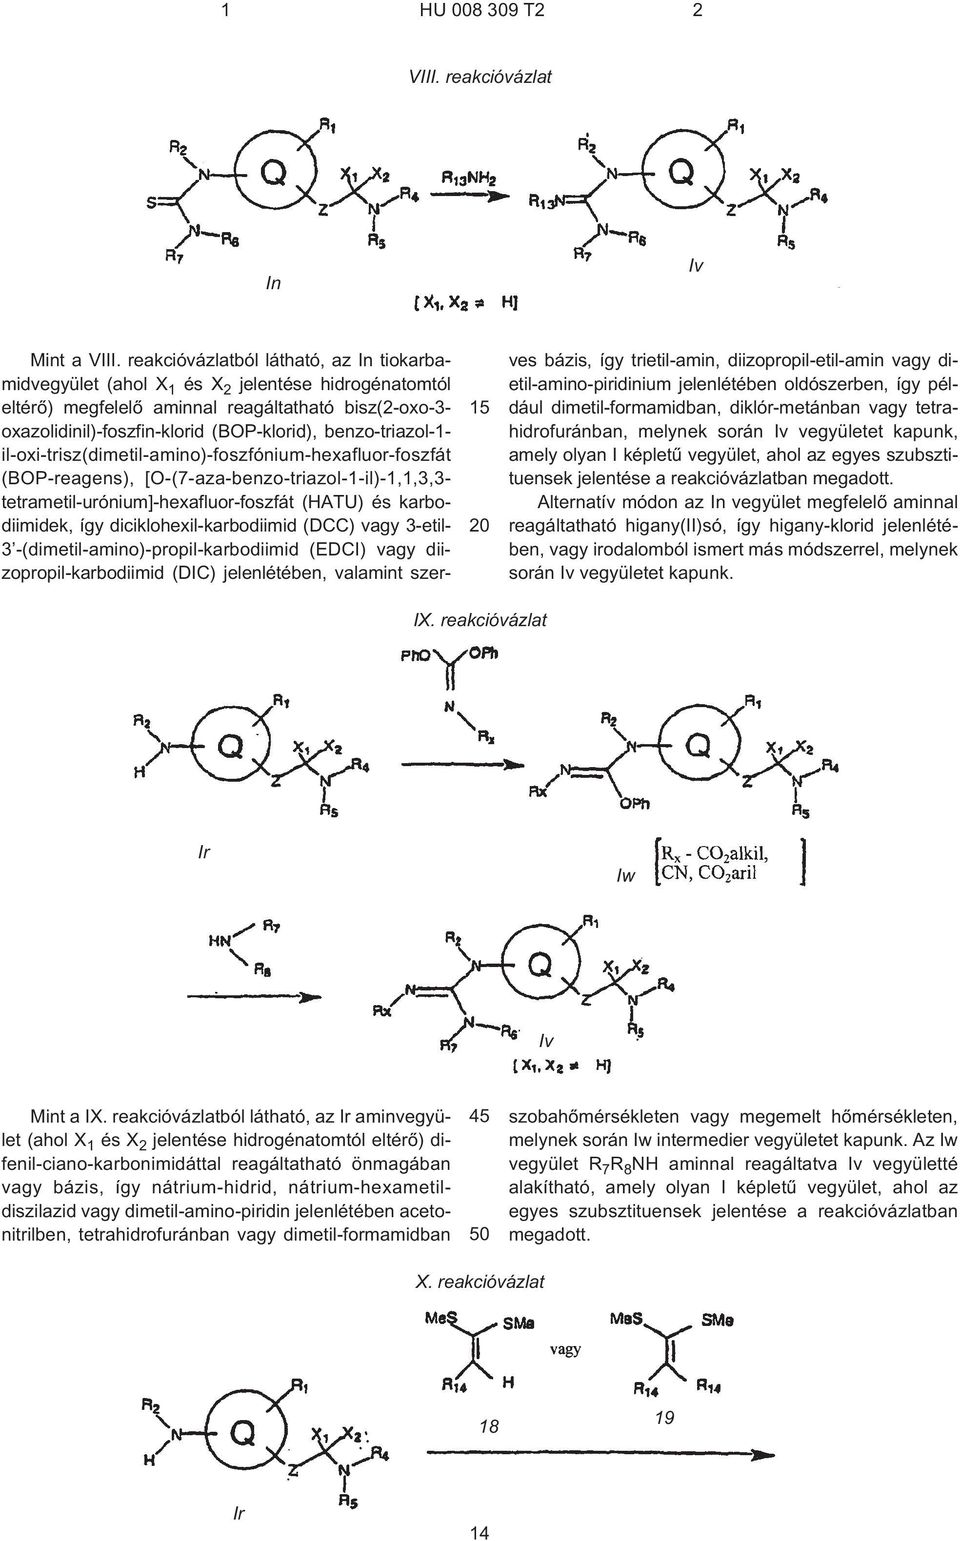 benzo-triazol-1- il-oxi-trisz(dimetil-amino)-foszfónium-hexafluor-foszfát (BOP-reagens), [O¹(7¹aza-benzo-triazol-1¹il)-1,1,3,3- tetrametil-urónium]-hexafluor-foszfát (HATU) és karbodiimidek, így